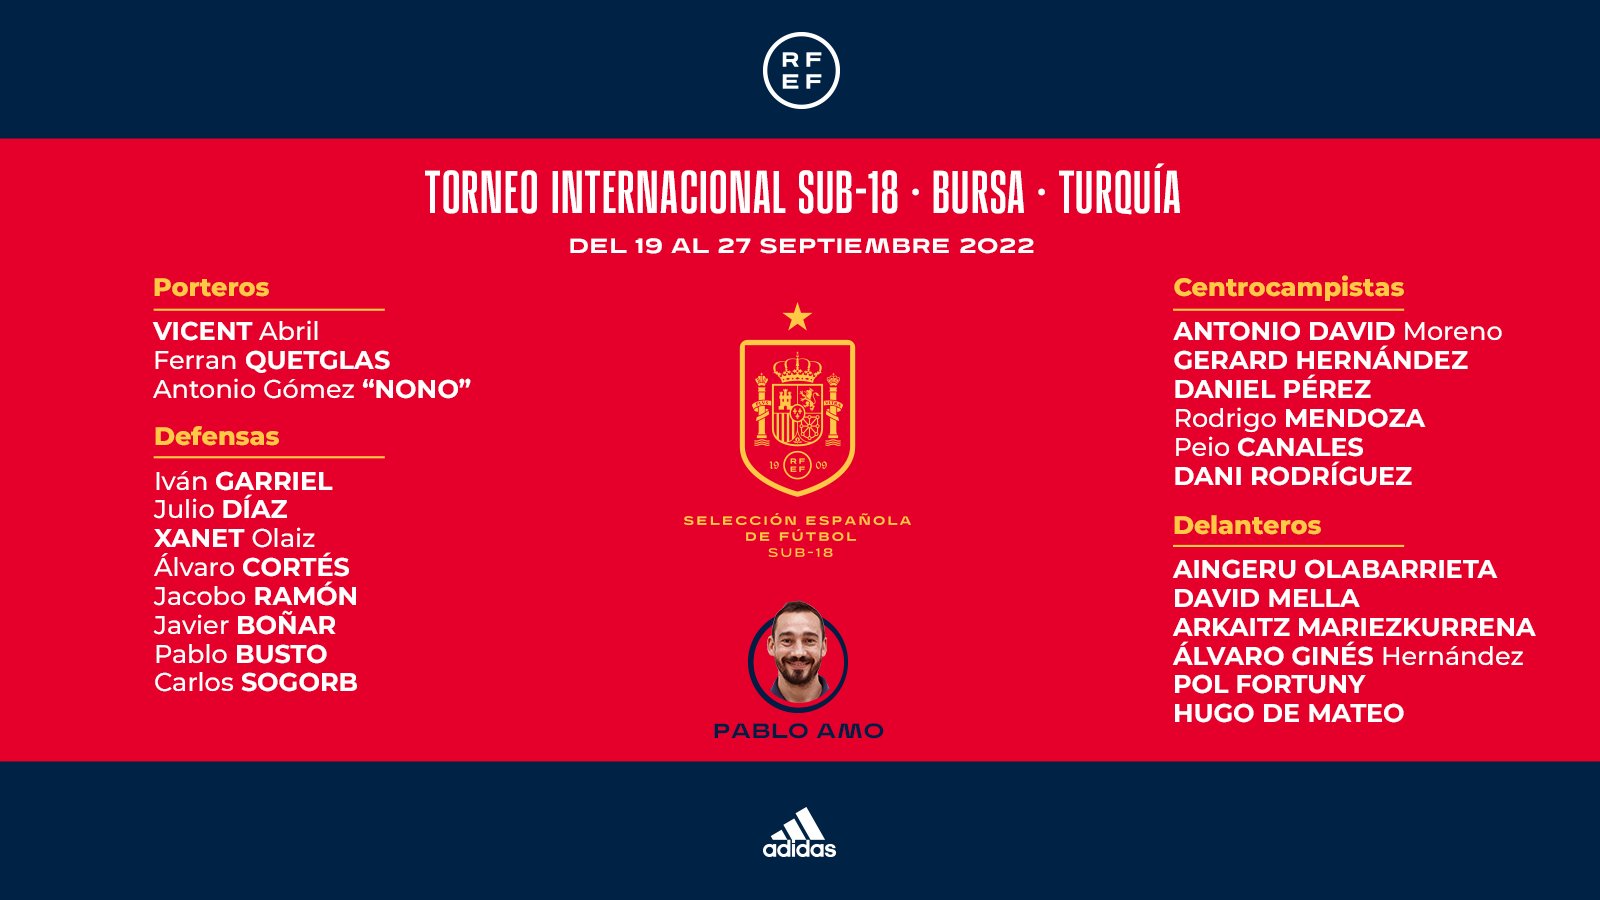 Selección de Fútbol on Twitter: | Estos son los convocados por Pablo Amo para el torneo internacional en Turquía. 🗓️ 22/09/2022 ⚽️ 🇪🇸-🇵🇹 ⌚️ 12:30h 🗓️ 24/09/2022 ⚽️ 🇹🇷-🇪🇸